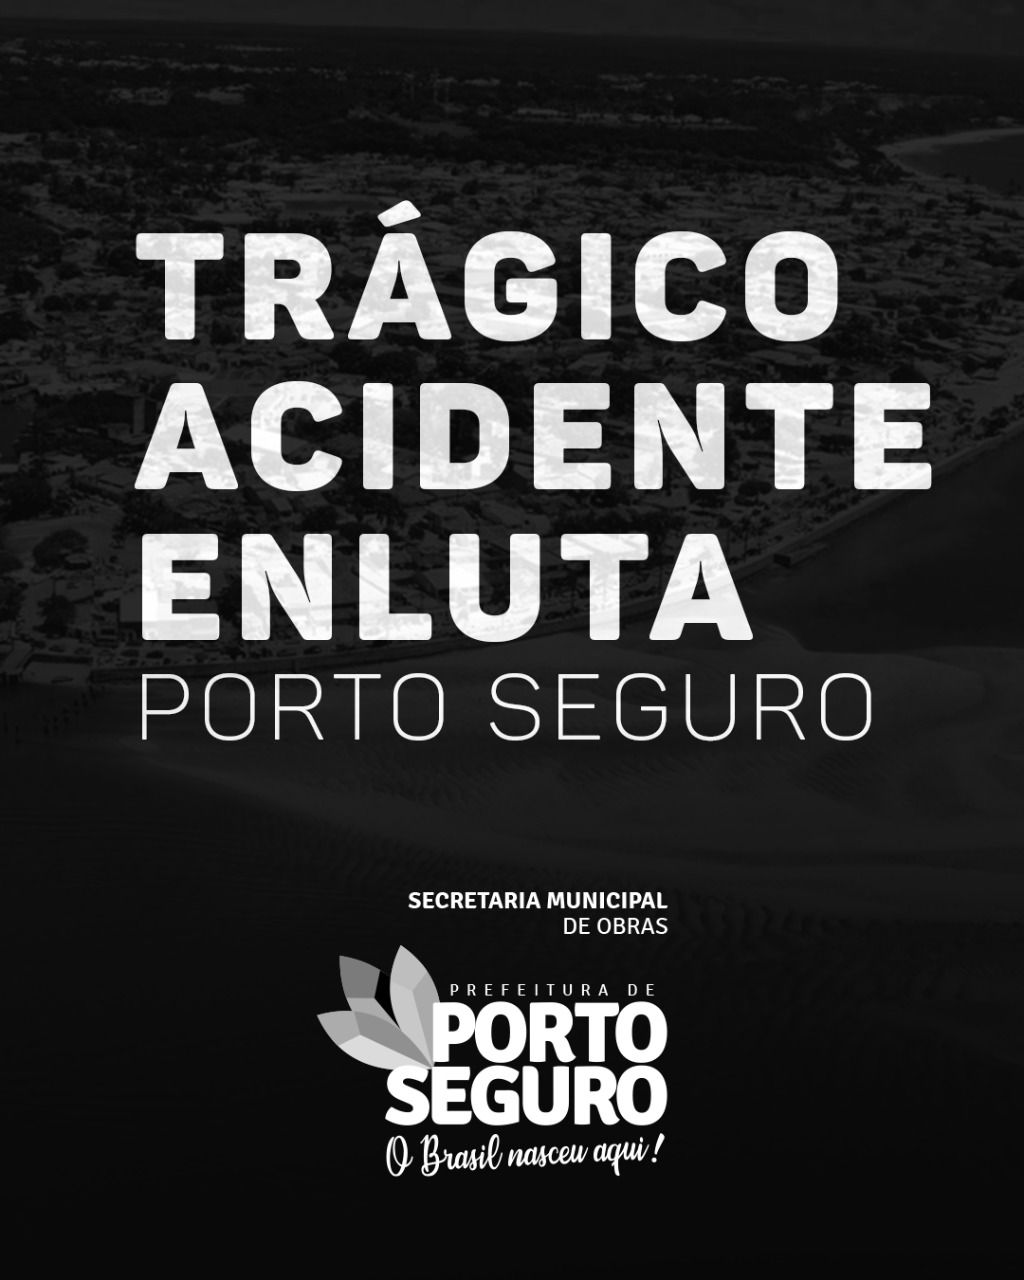 TRÁGICO ACIDENTE ENLUTA PORTO SEGURO 12